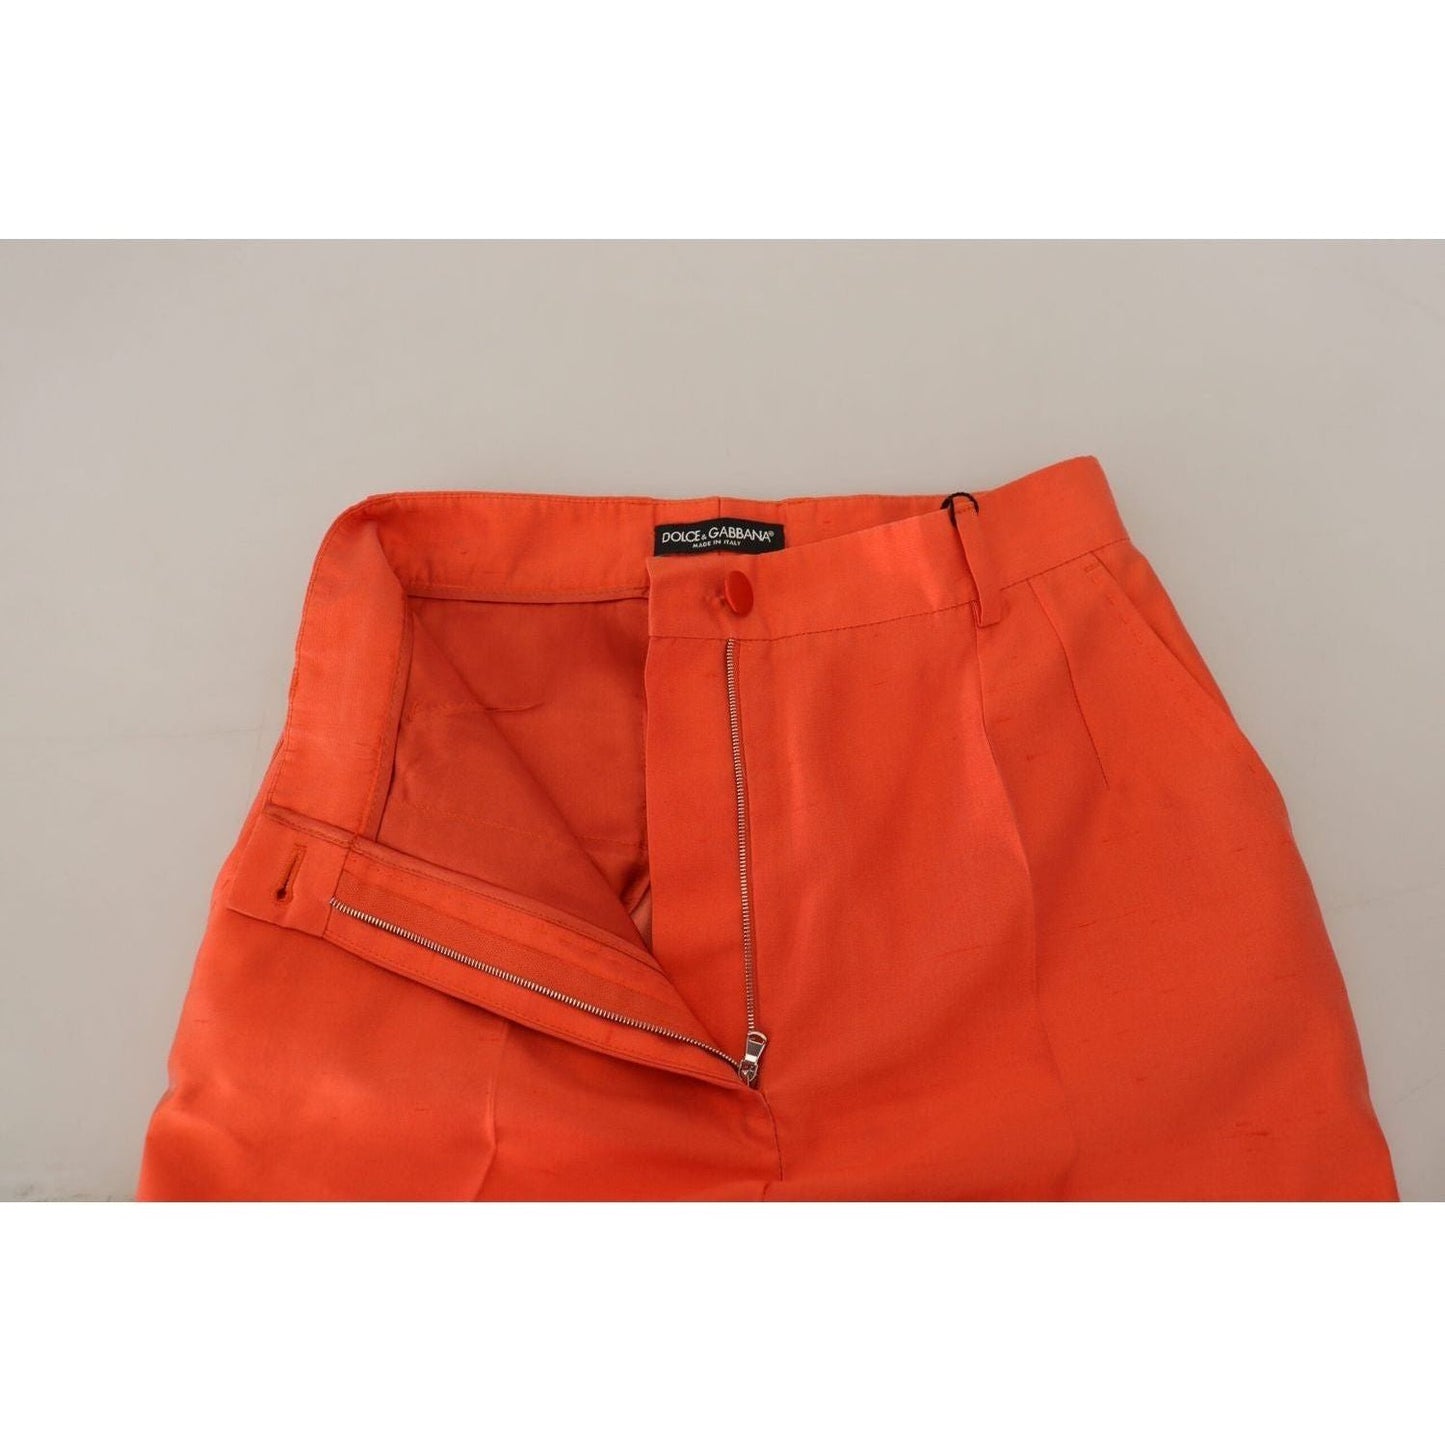 Dolce & Gabbana Elegant Silk High-Waist Cropped Pants orange-silk-high-waist-cropped-pants IMG_7441-scaled-c973f10b-bdd.jpg